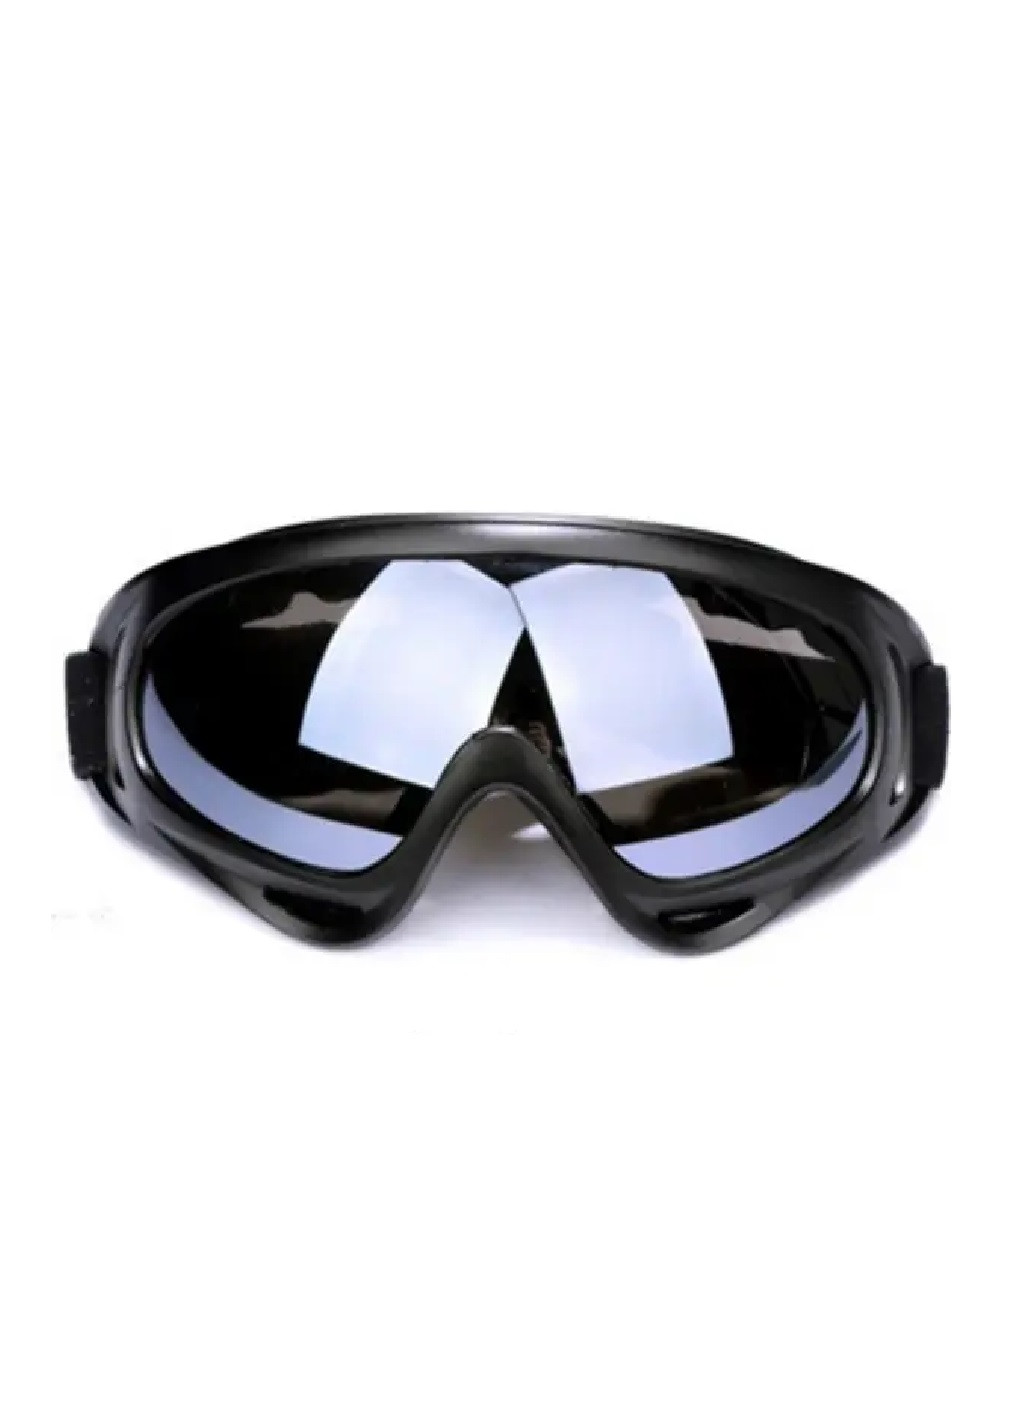 Маска очки защитные для пейнтбола страйкбола сноуборда лыж велосипеда самоката черный корпус (476216-Prob) Черные линзы Unbranded (277696173)